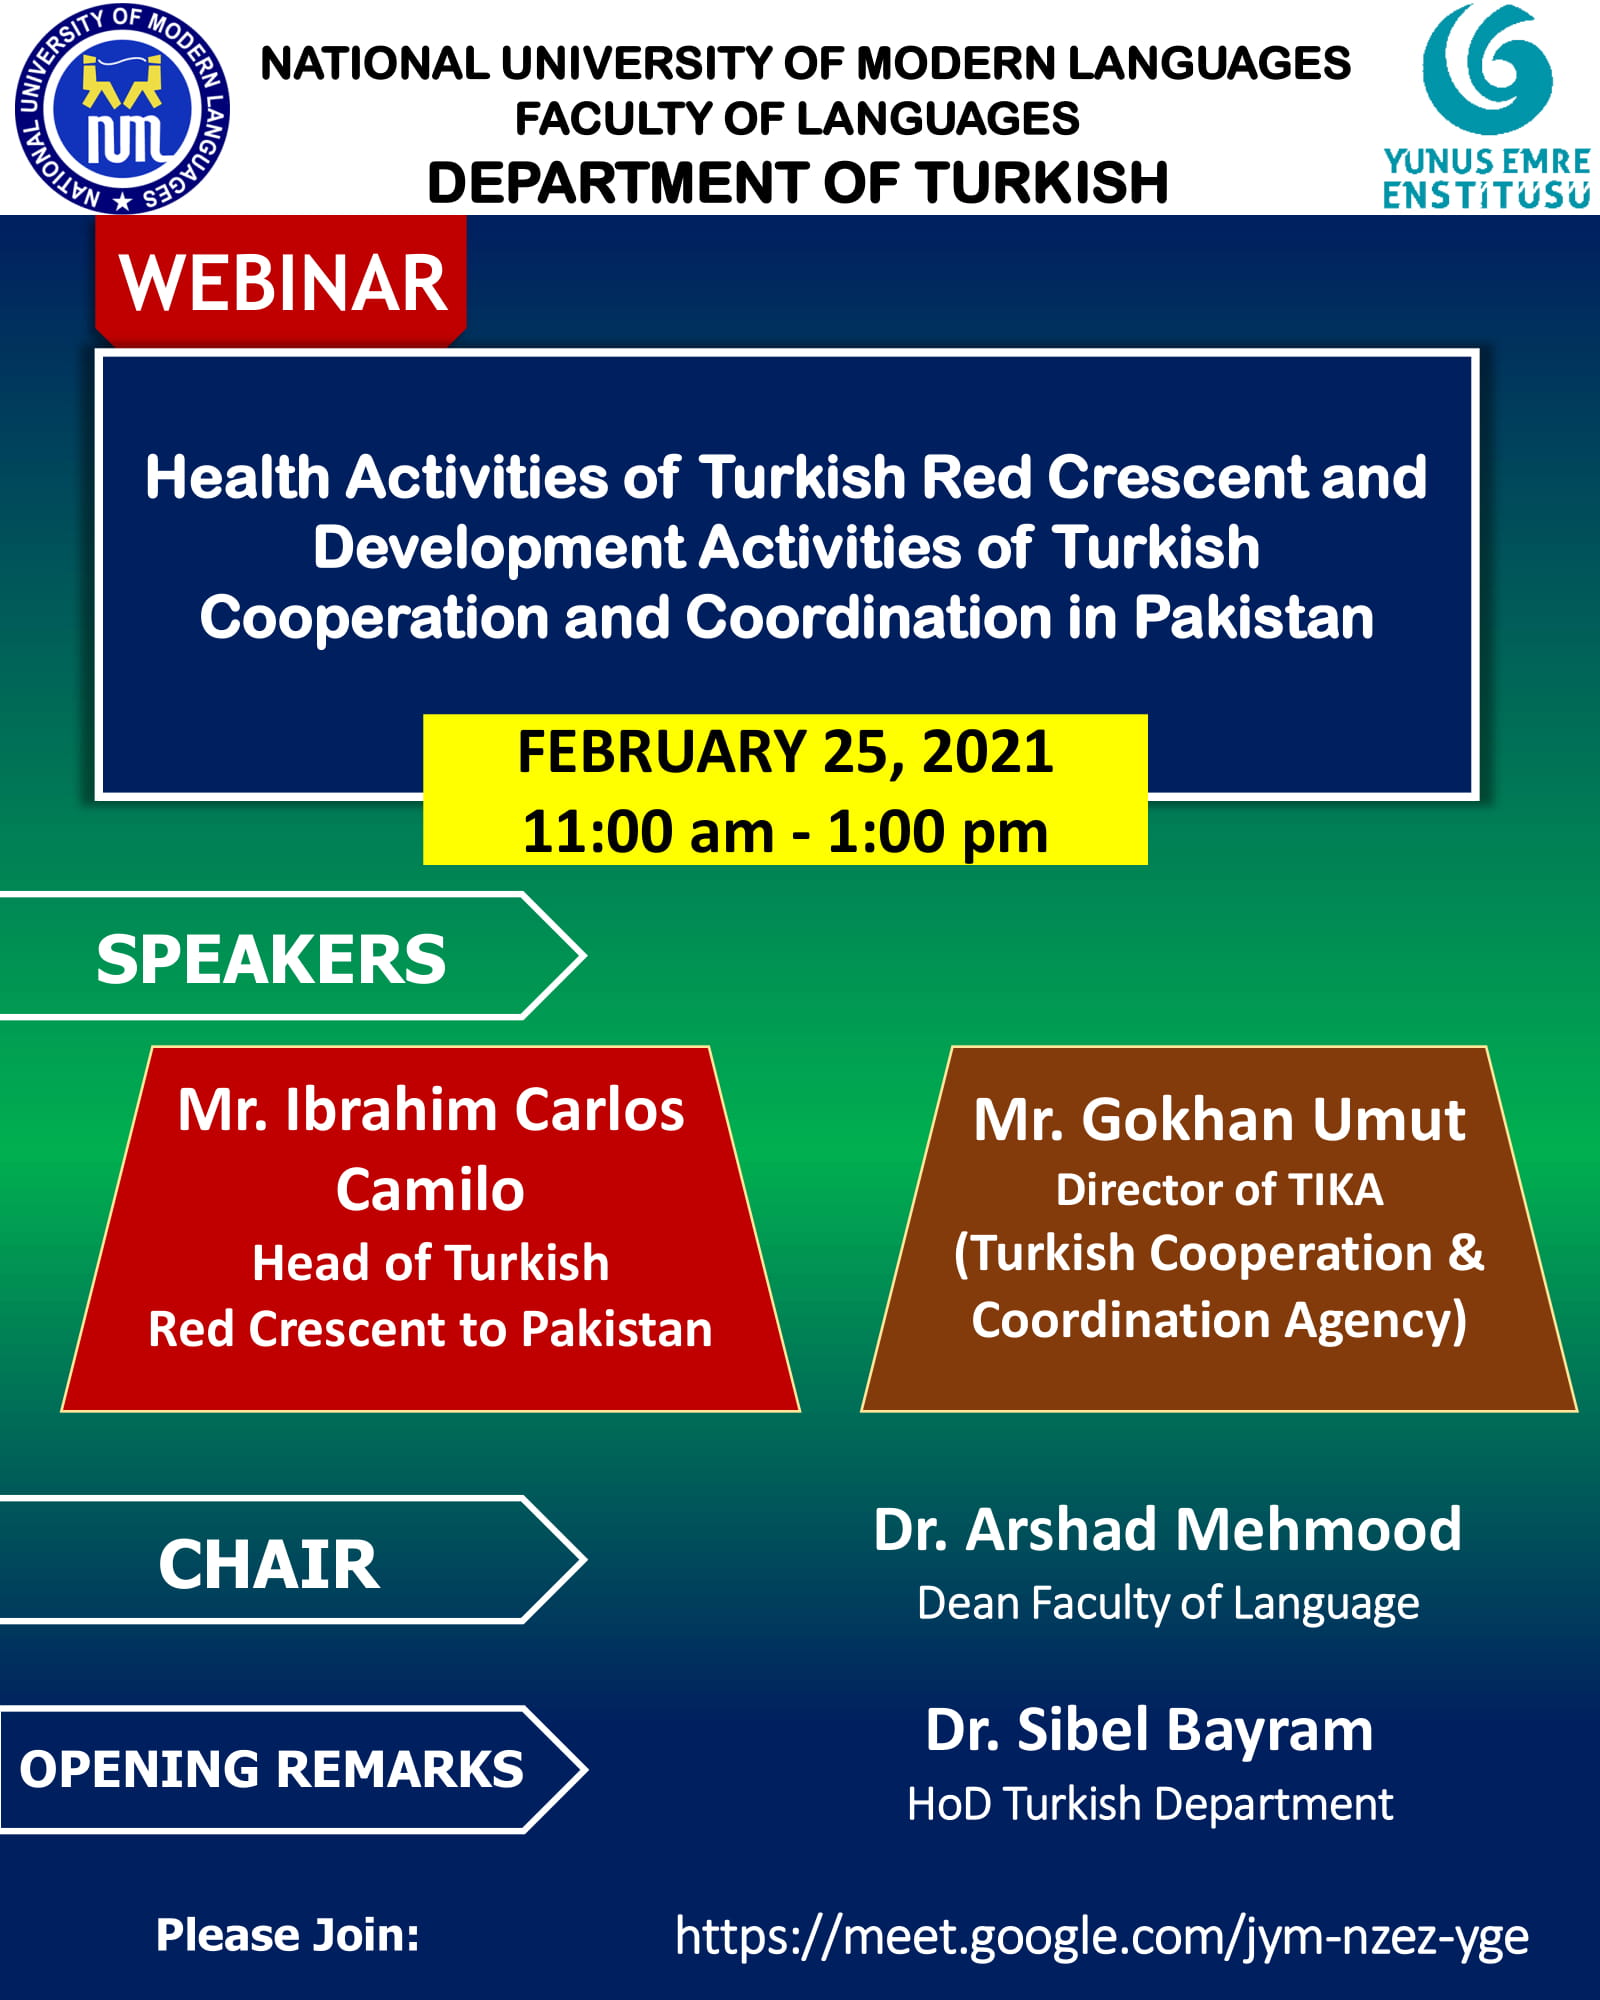 Webinar: Health Activities of Turkish Red Crescent and Development Activities of Turkish Cooperation and Coordination in Pakistan